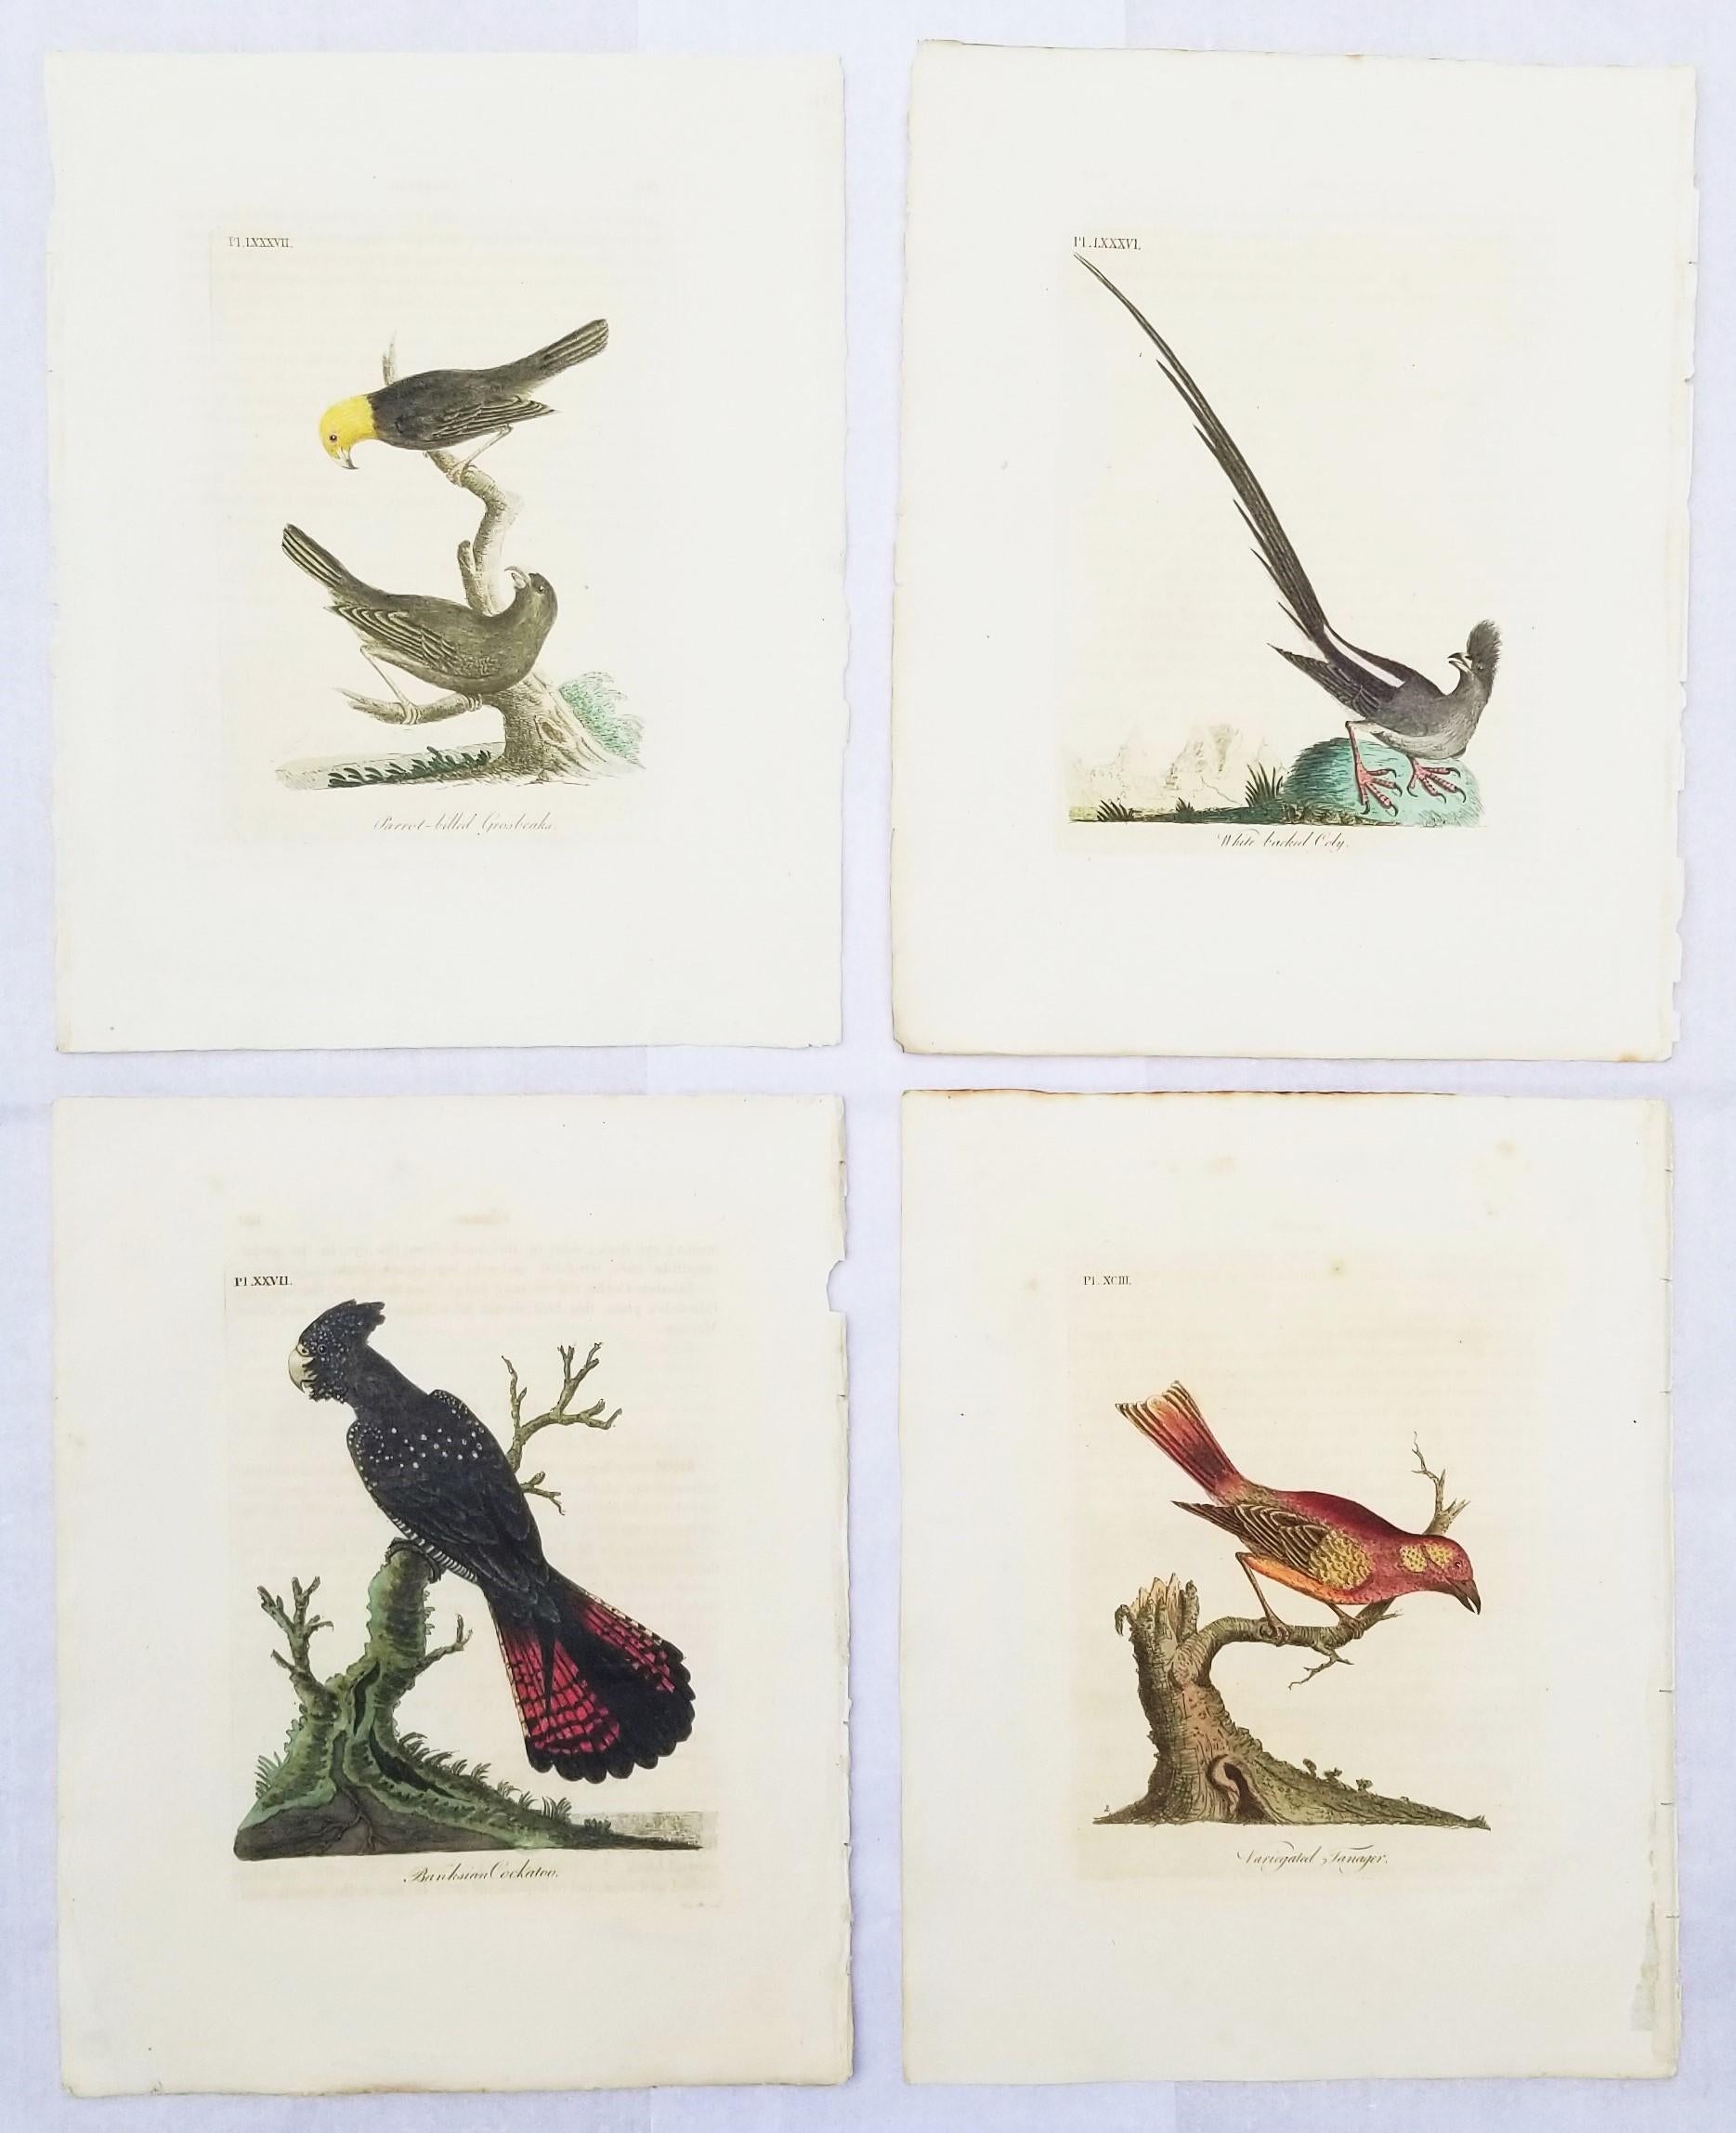 Künstler: John Latham (Englisch, 1740-1837)
Titel: "Papageienschnabel-Kernbeißer", "Weißrücken-Kolibri", "Billing-Kakadu" und "Bunttangare"
Mappe: Eine allgemeine Geschichte der Vögel
Jahr: 1821-1828 (zweite Auflage)
Medium: Satz von vier